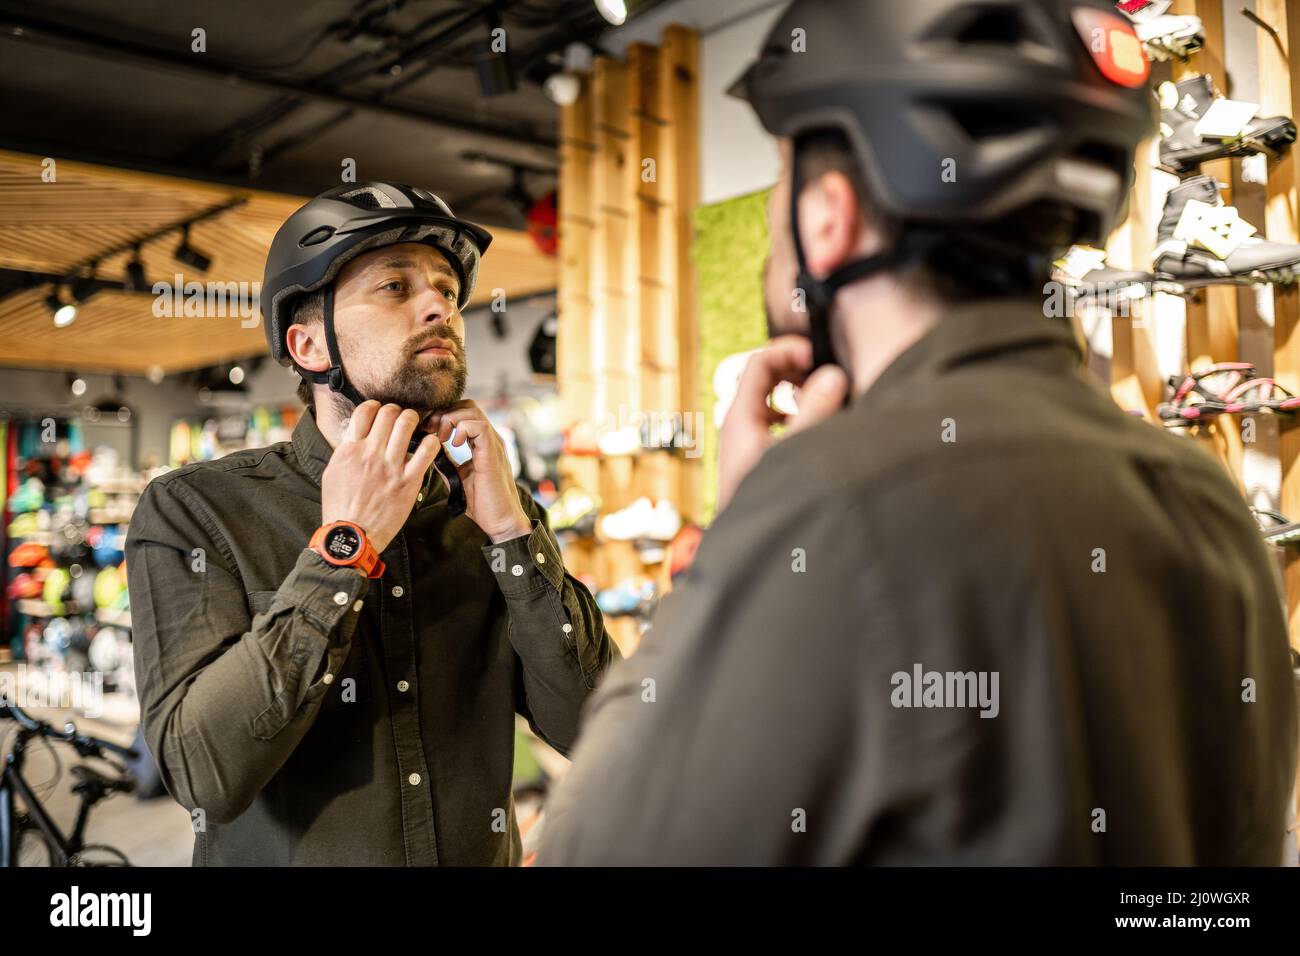 Hombre examinando cascos de bicicleta en una tienda de deportes